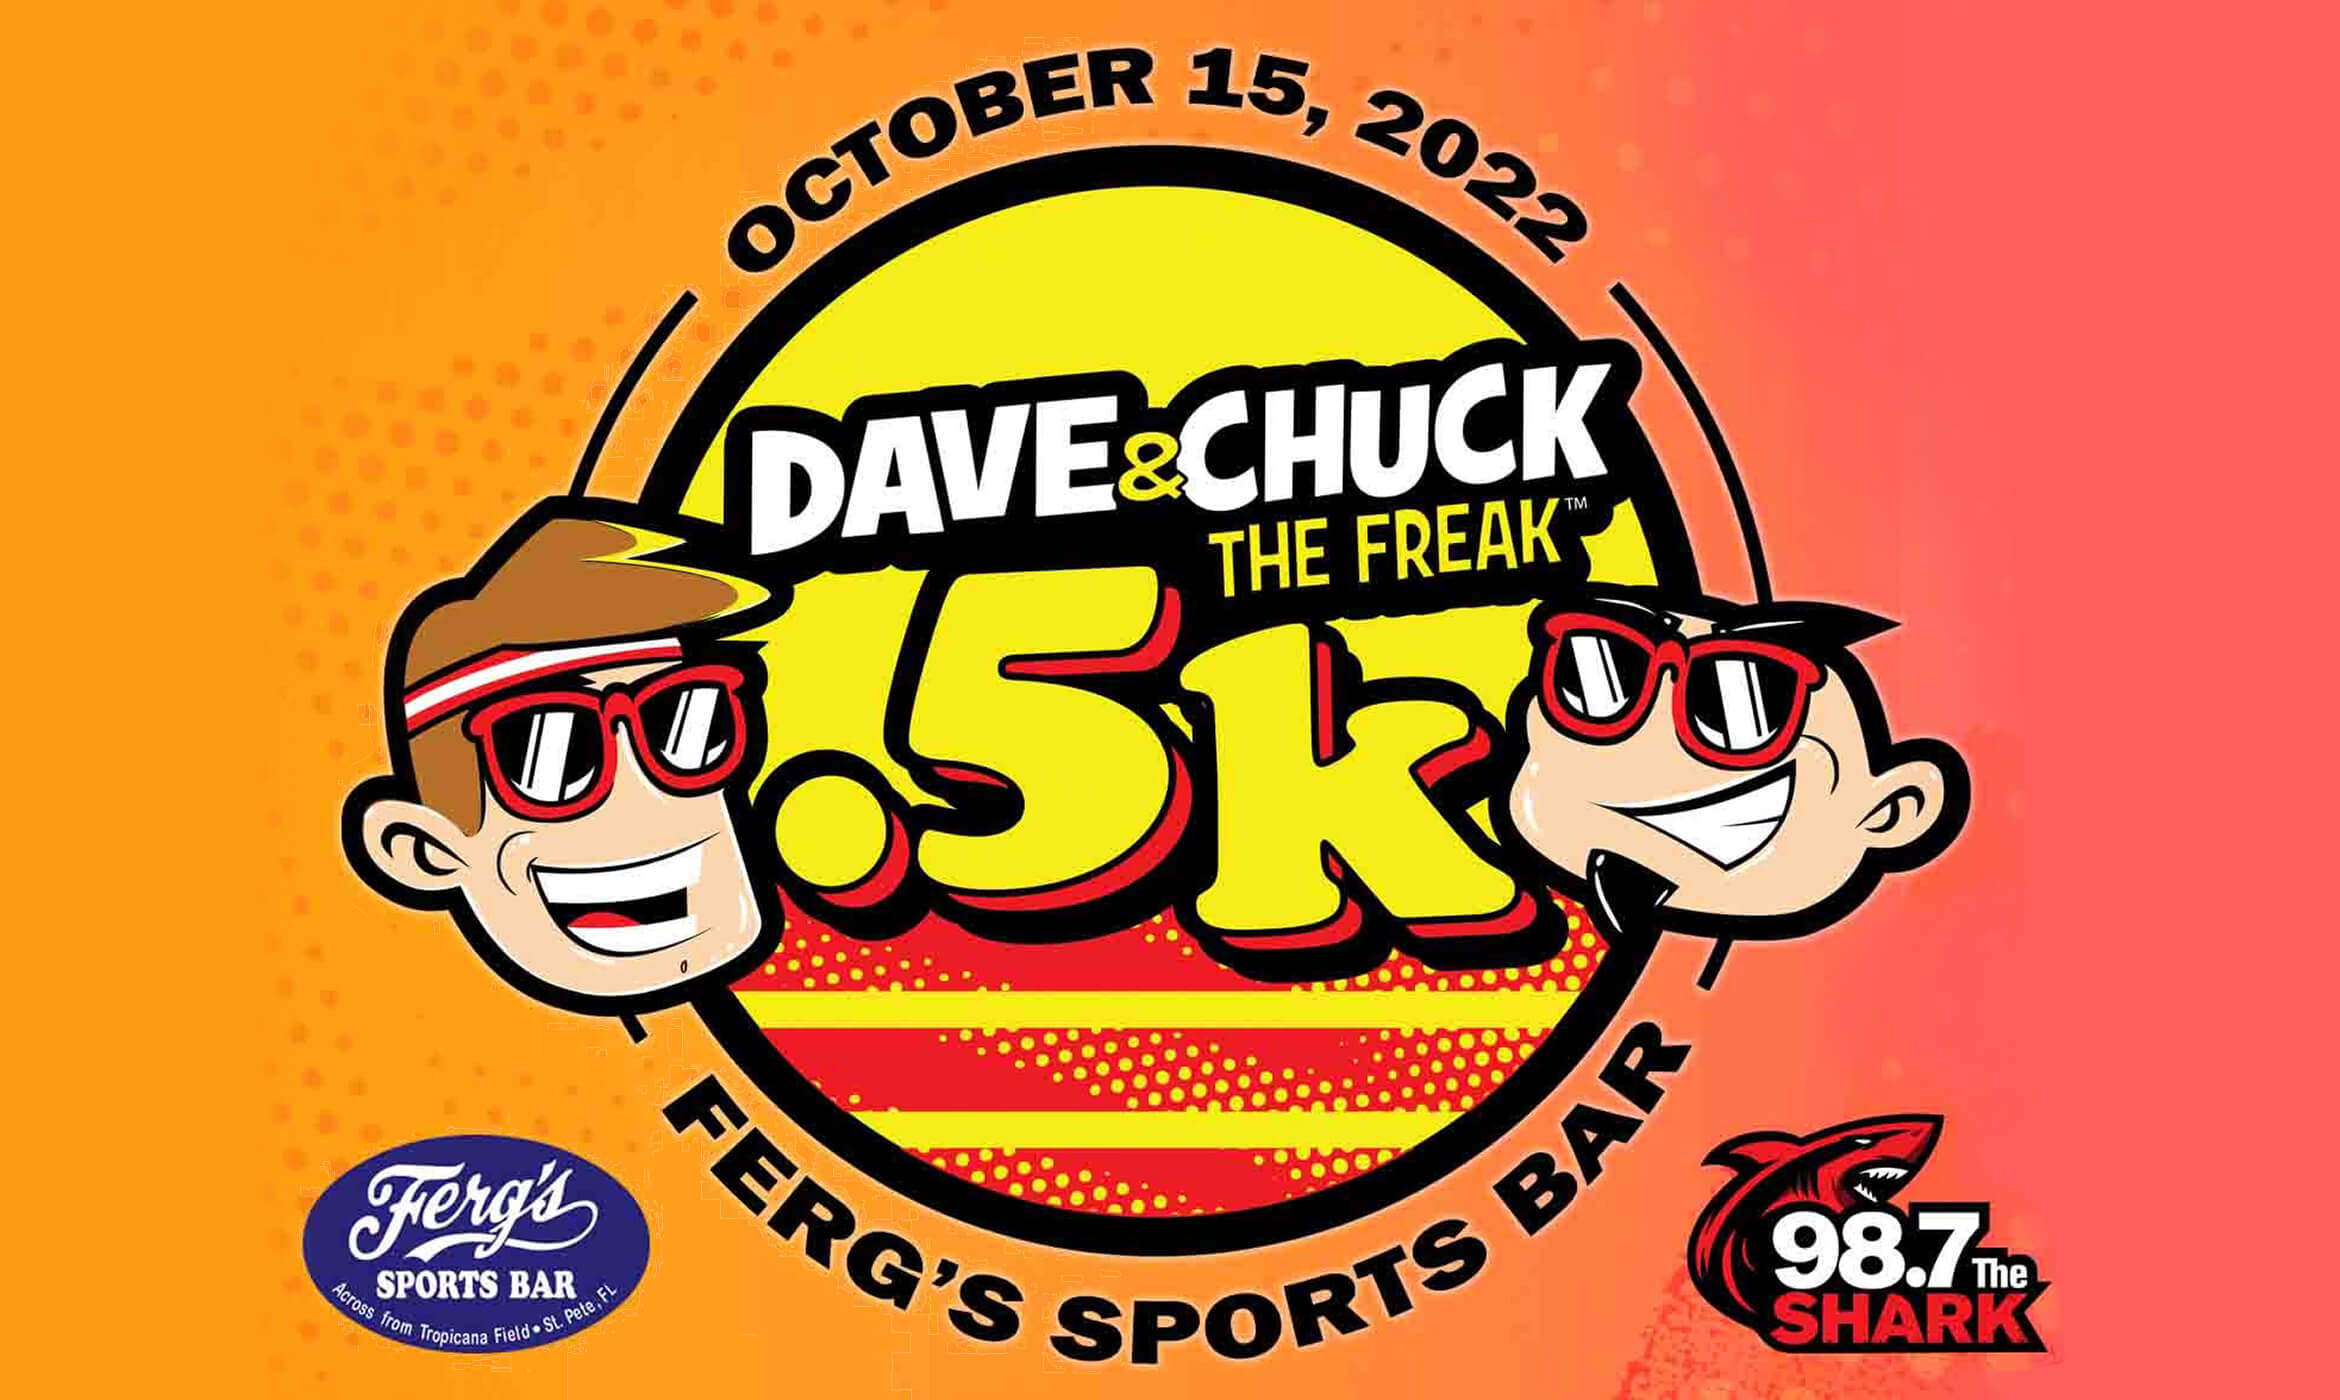 Dave & Chuck The Freaks 5k Race